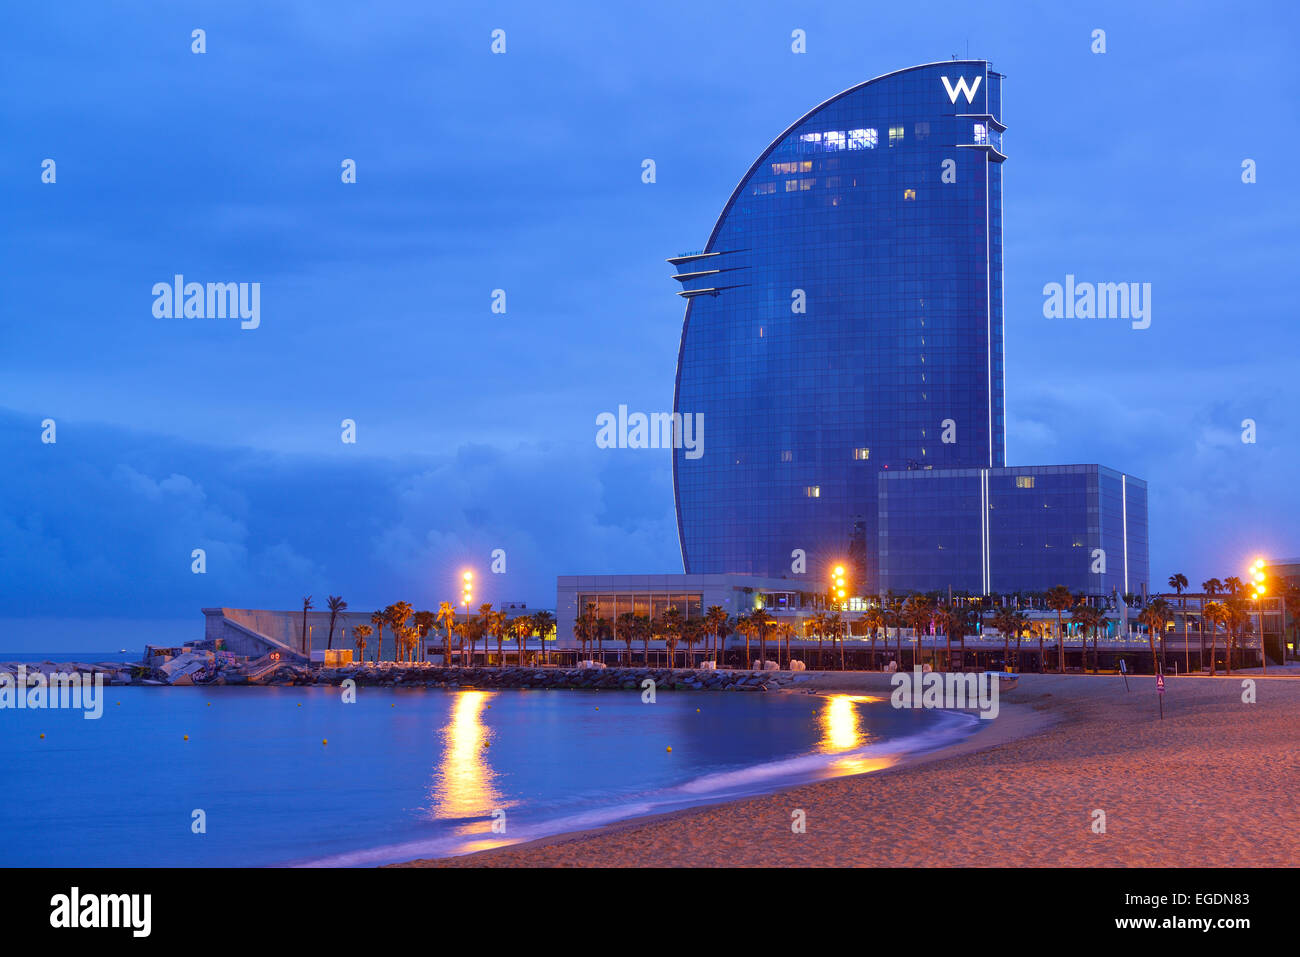 Hotel W e spiaggia, illuminata di notte, architetto Ricardo Bofill, Barceloneta, Barcellona, in Catalogna, Spagna Foto Stock